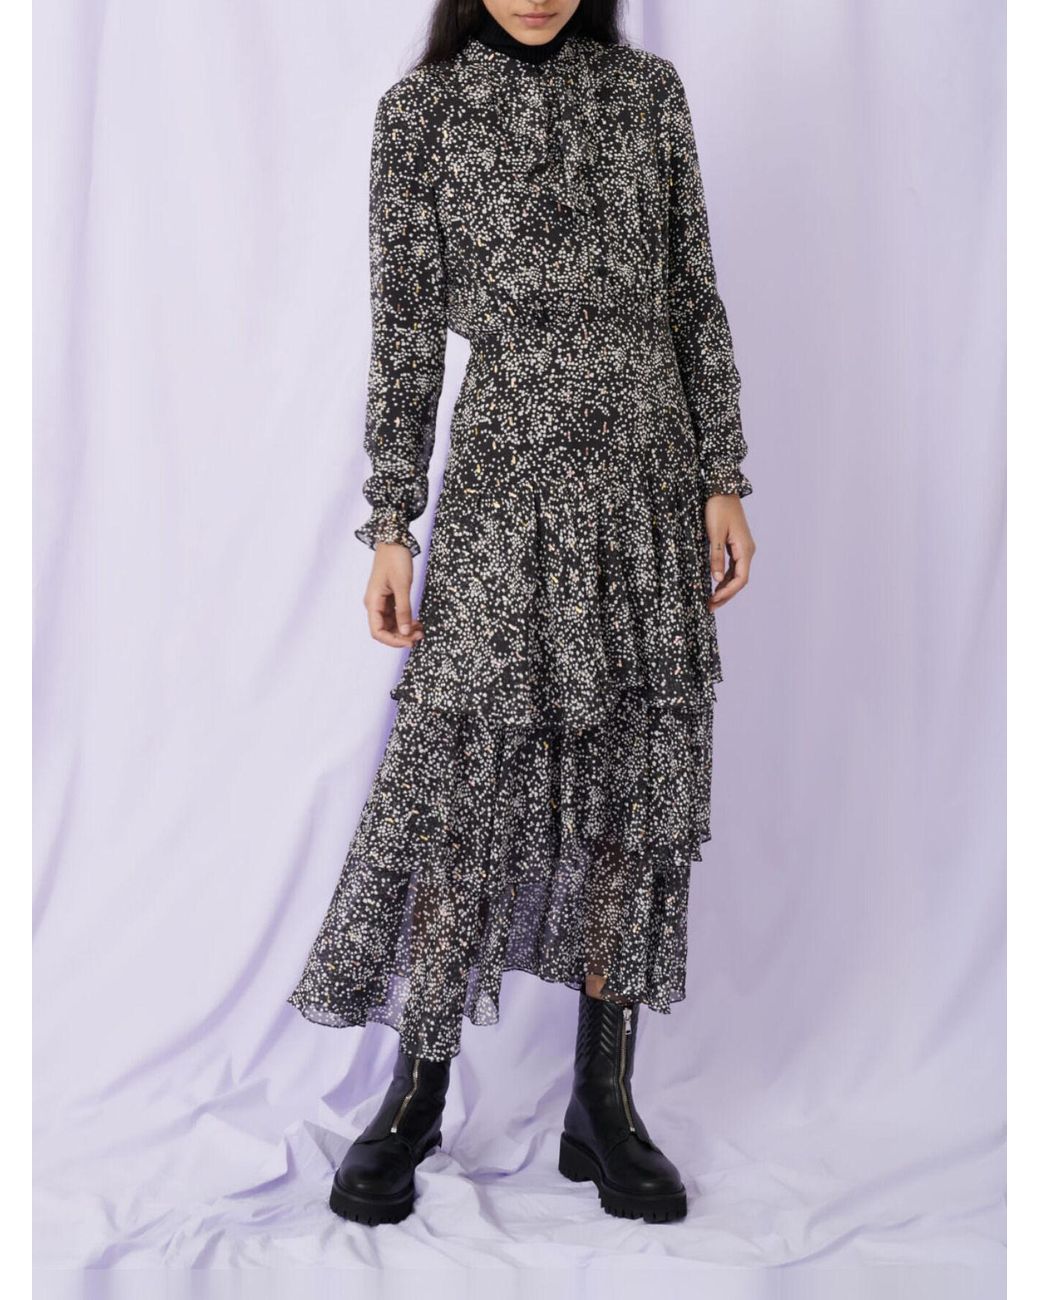 Lurex Leopard Dress - Women - Ready-to-Wear